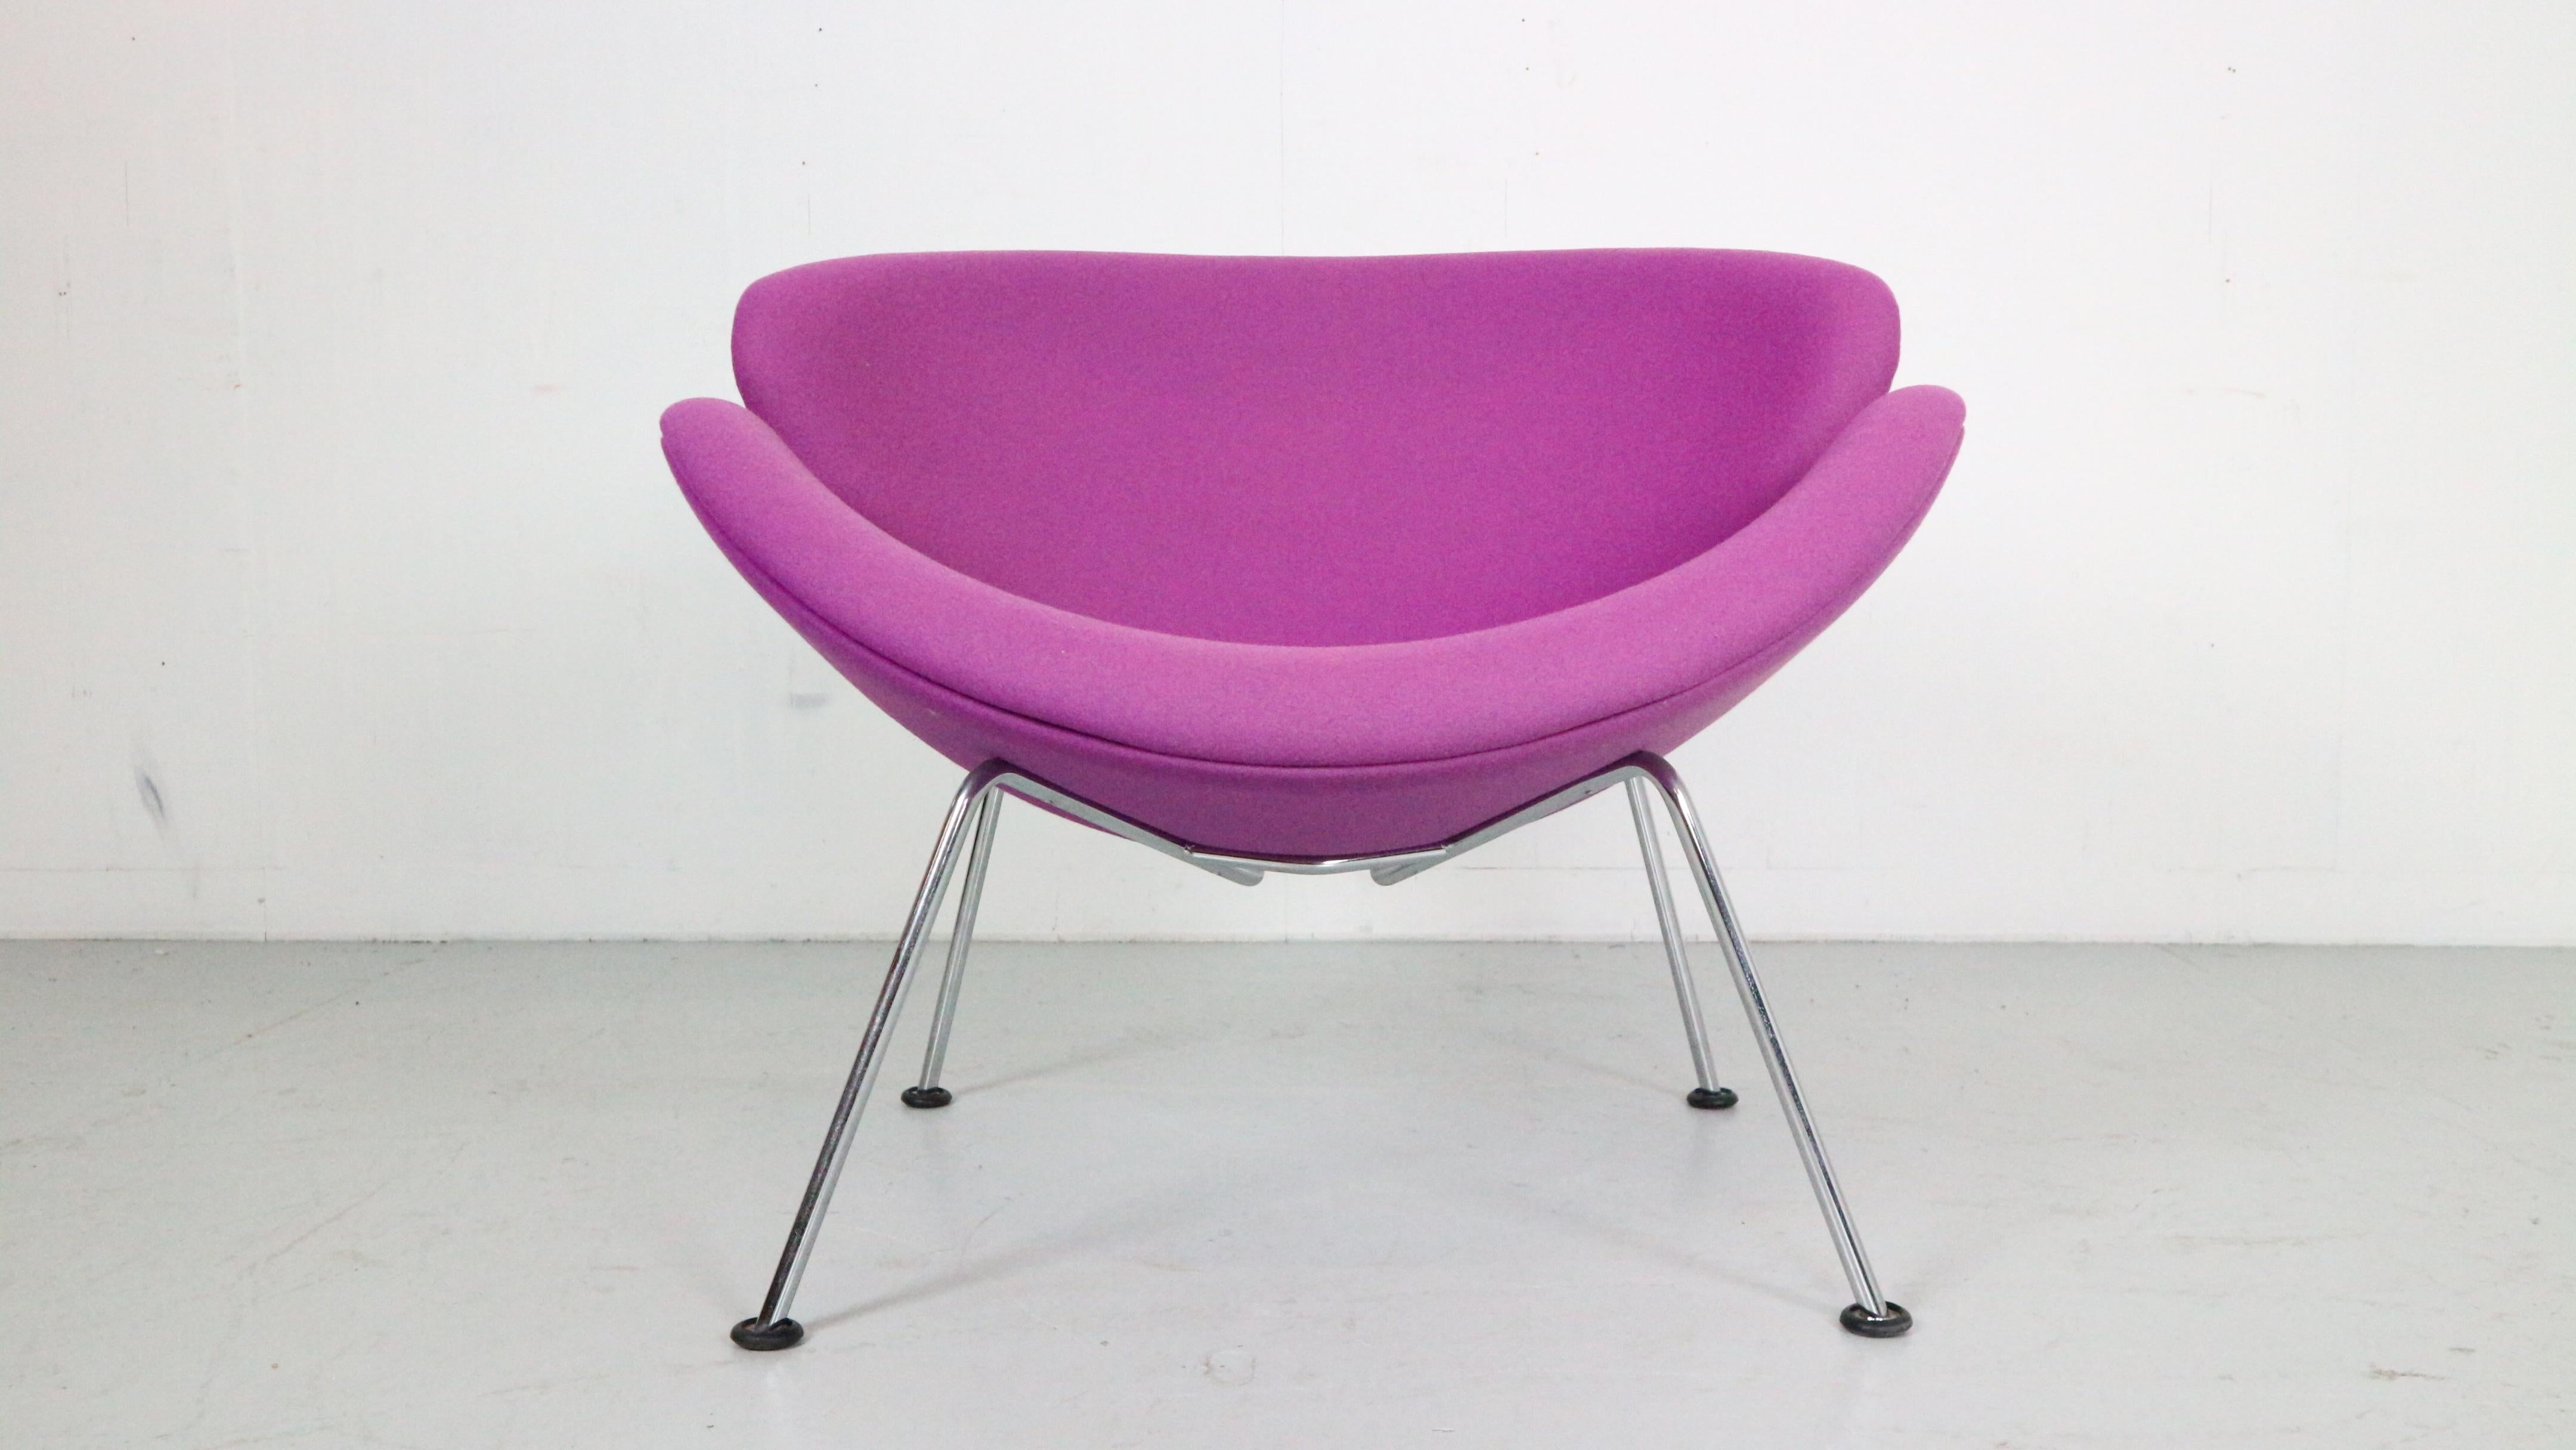 Chaise longue conçue par Pierre Paulin pour la manufacture Artifort, période des années 1960, Hollande.
Le modèle de la chaise s'appelle 